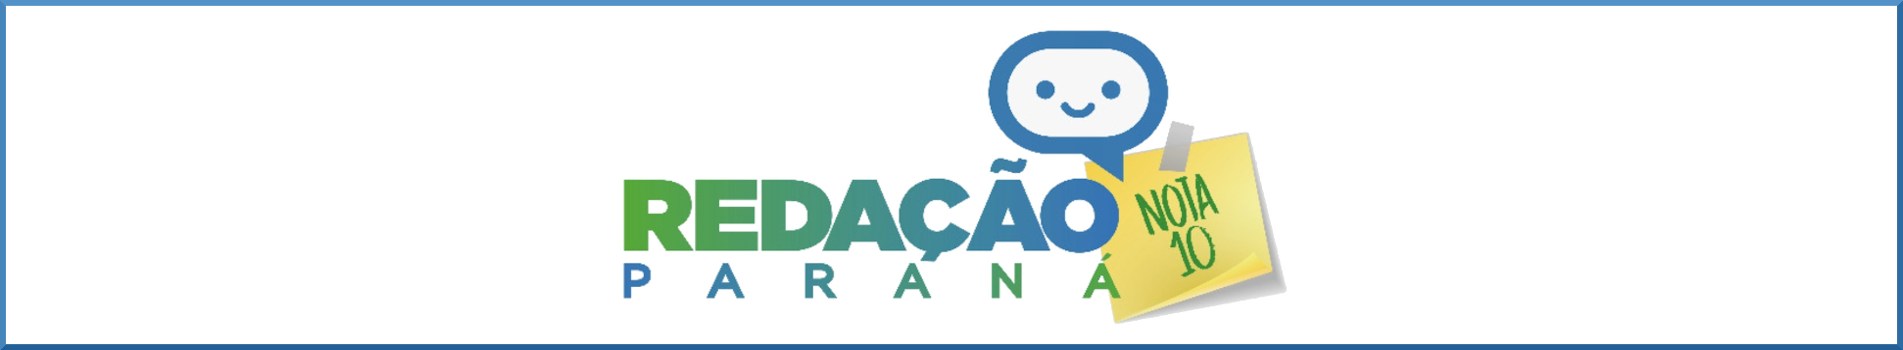 Banner logo Redação Paraná Nota 10